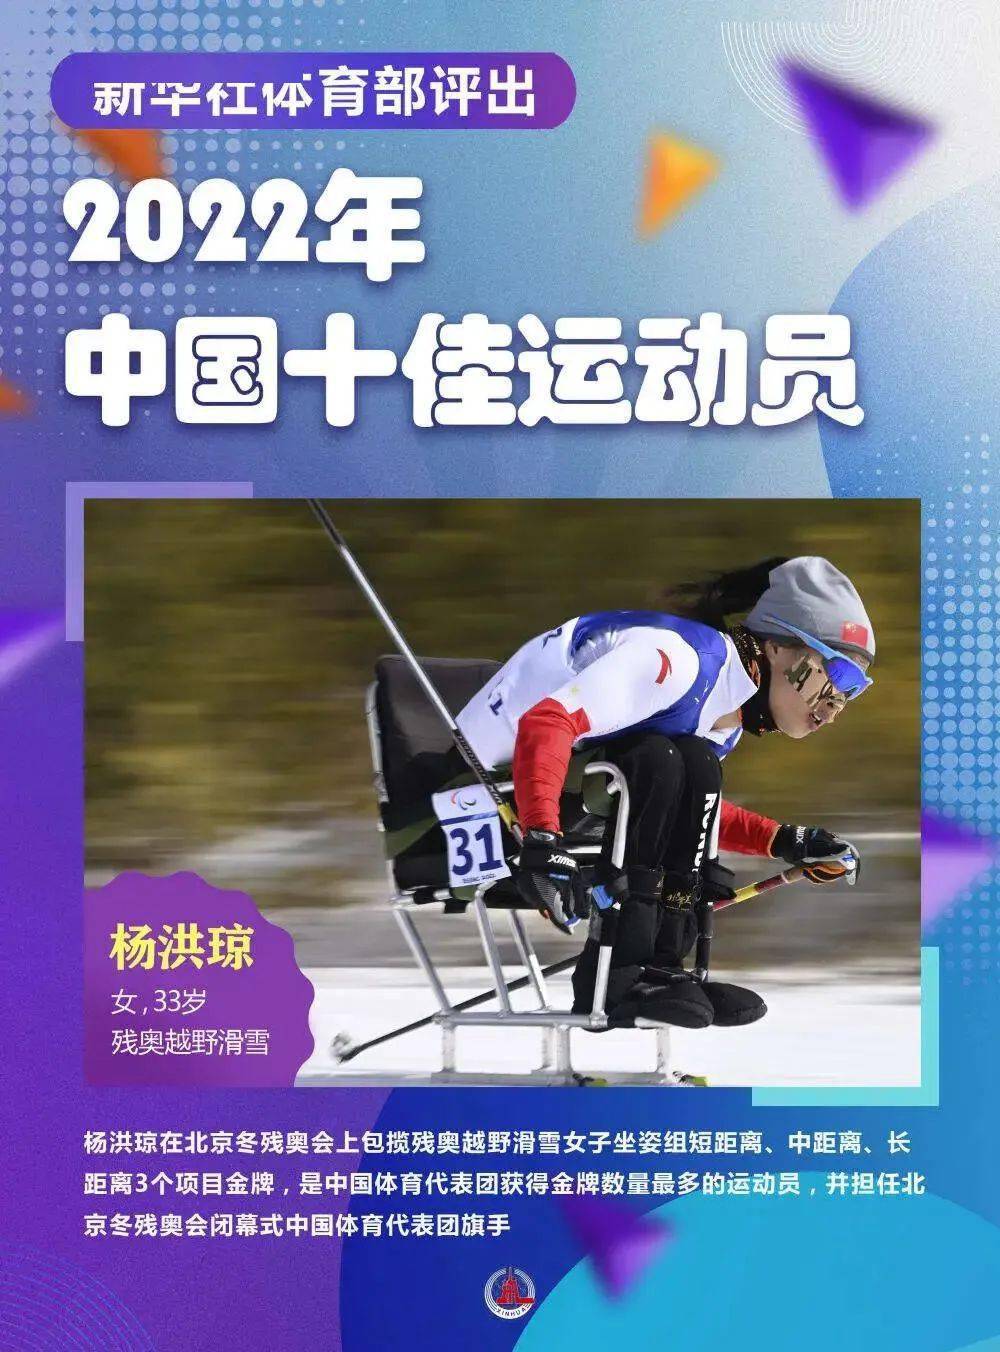 新华社体育部评出2022年中国十佳运发动